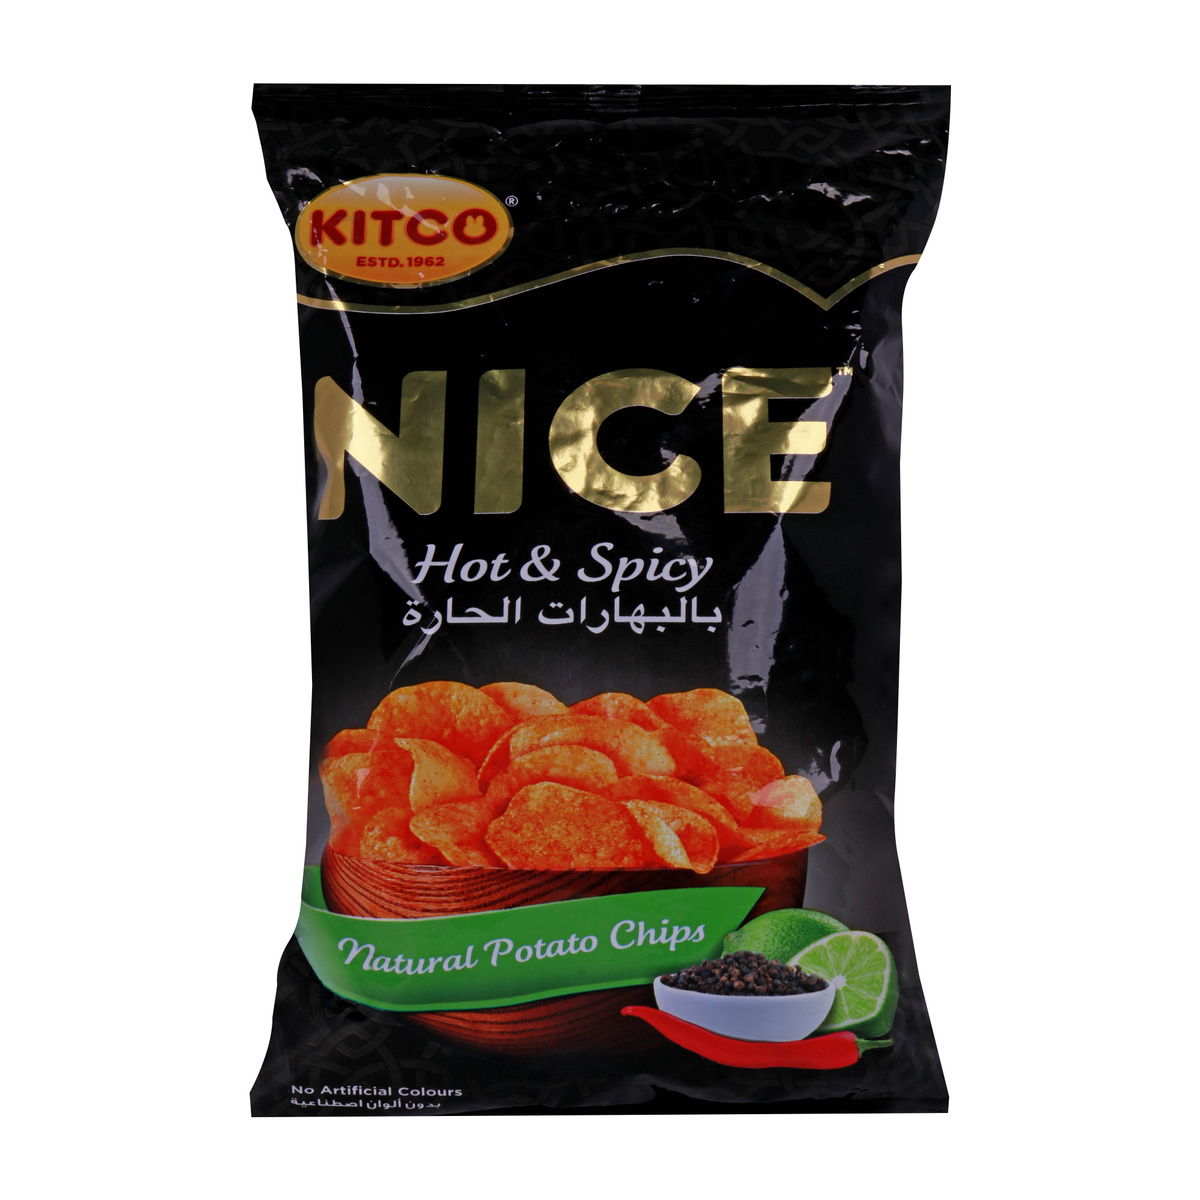 Kitco Nice Natural Potato Chips Hot & Spicy 167g